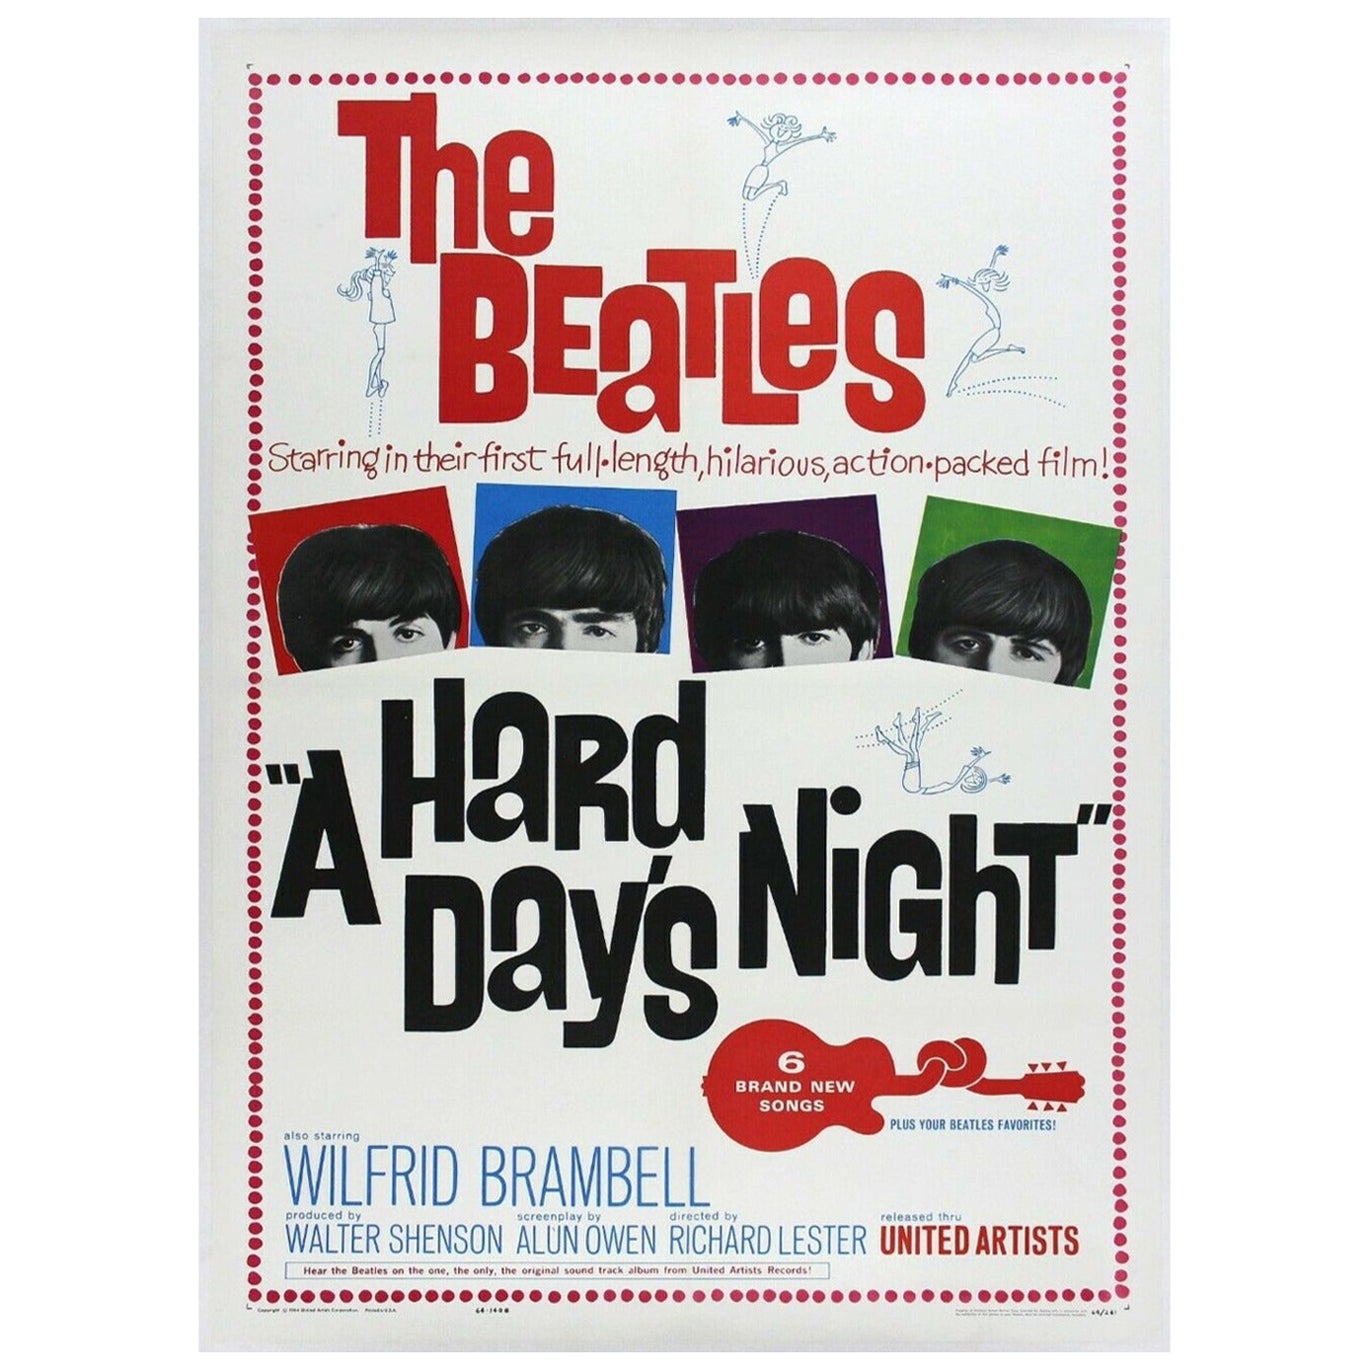 Les Beatles - A Hard Day's Night - Affiche vintage d'origine, 1965